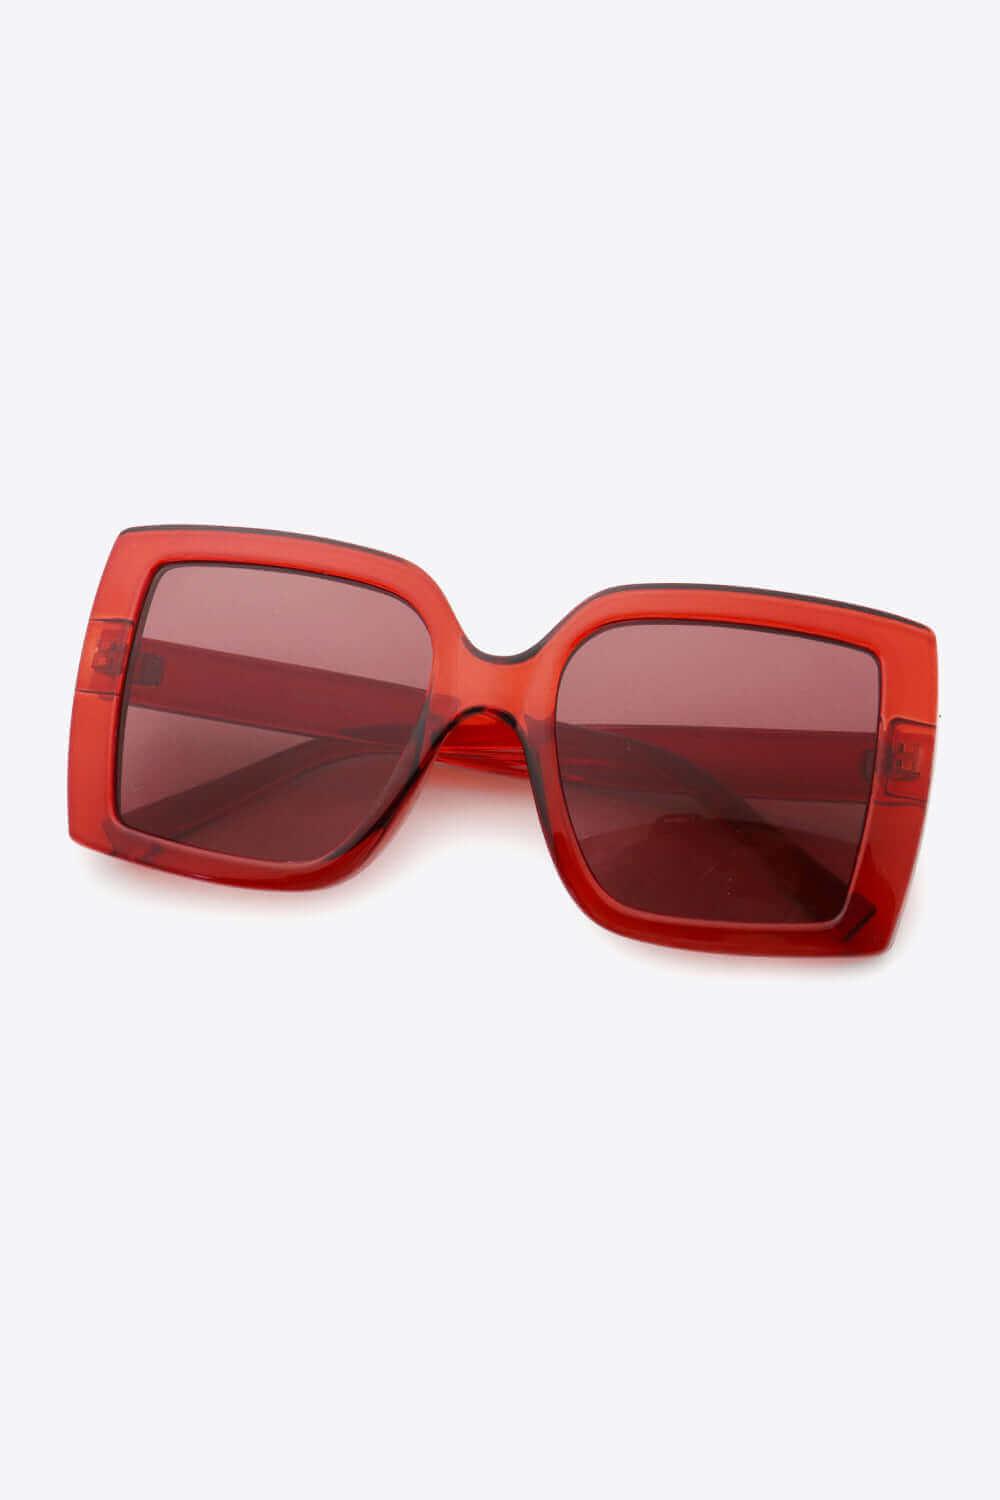 Elegant Acetate Lens Square Sunglasses - Samslivos